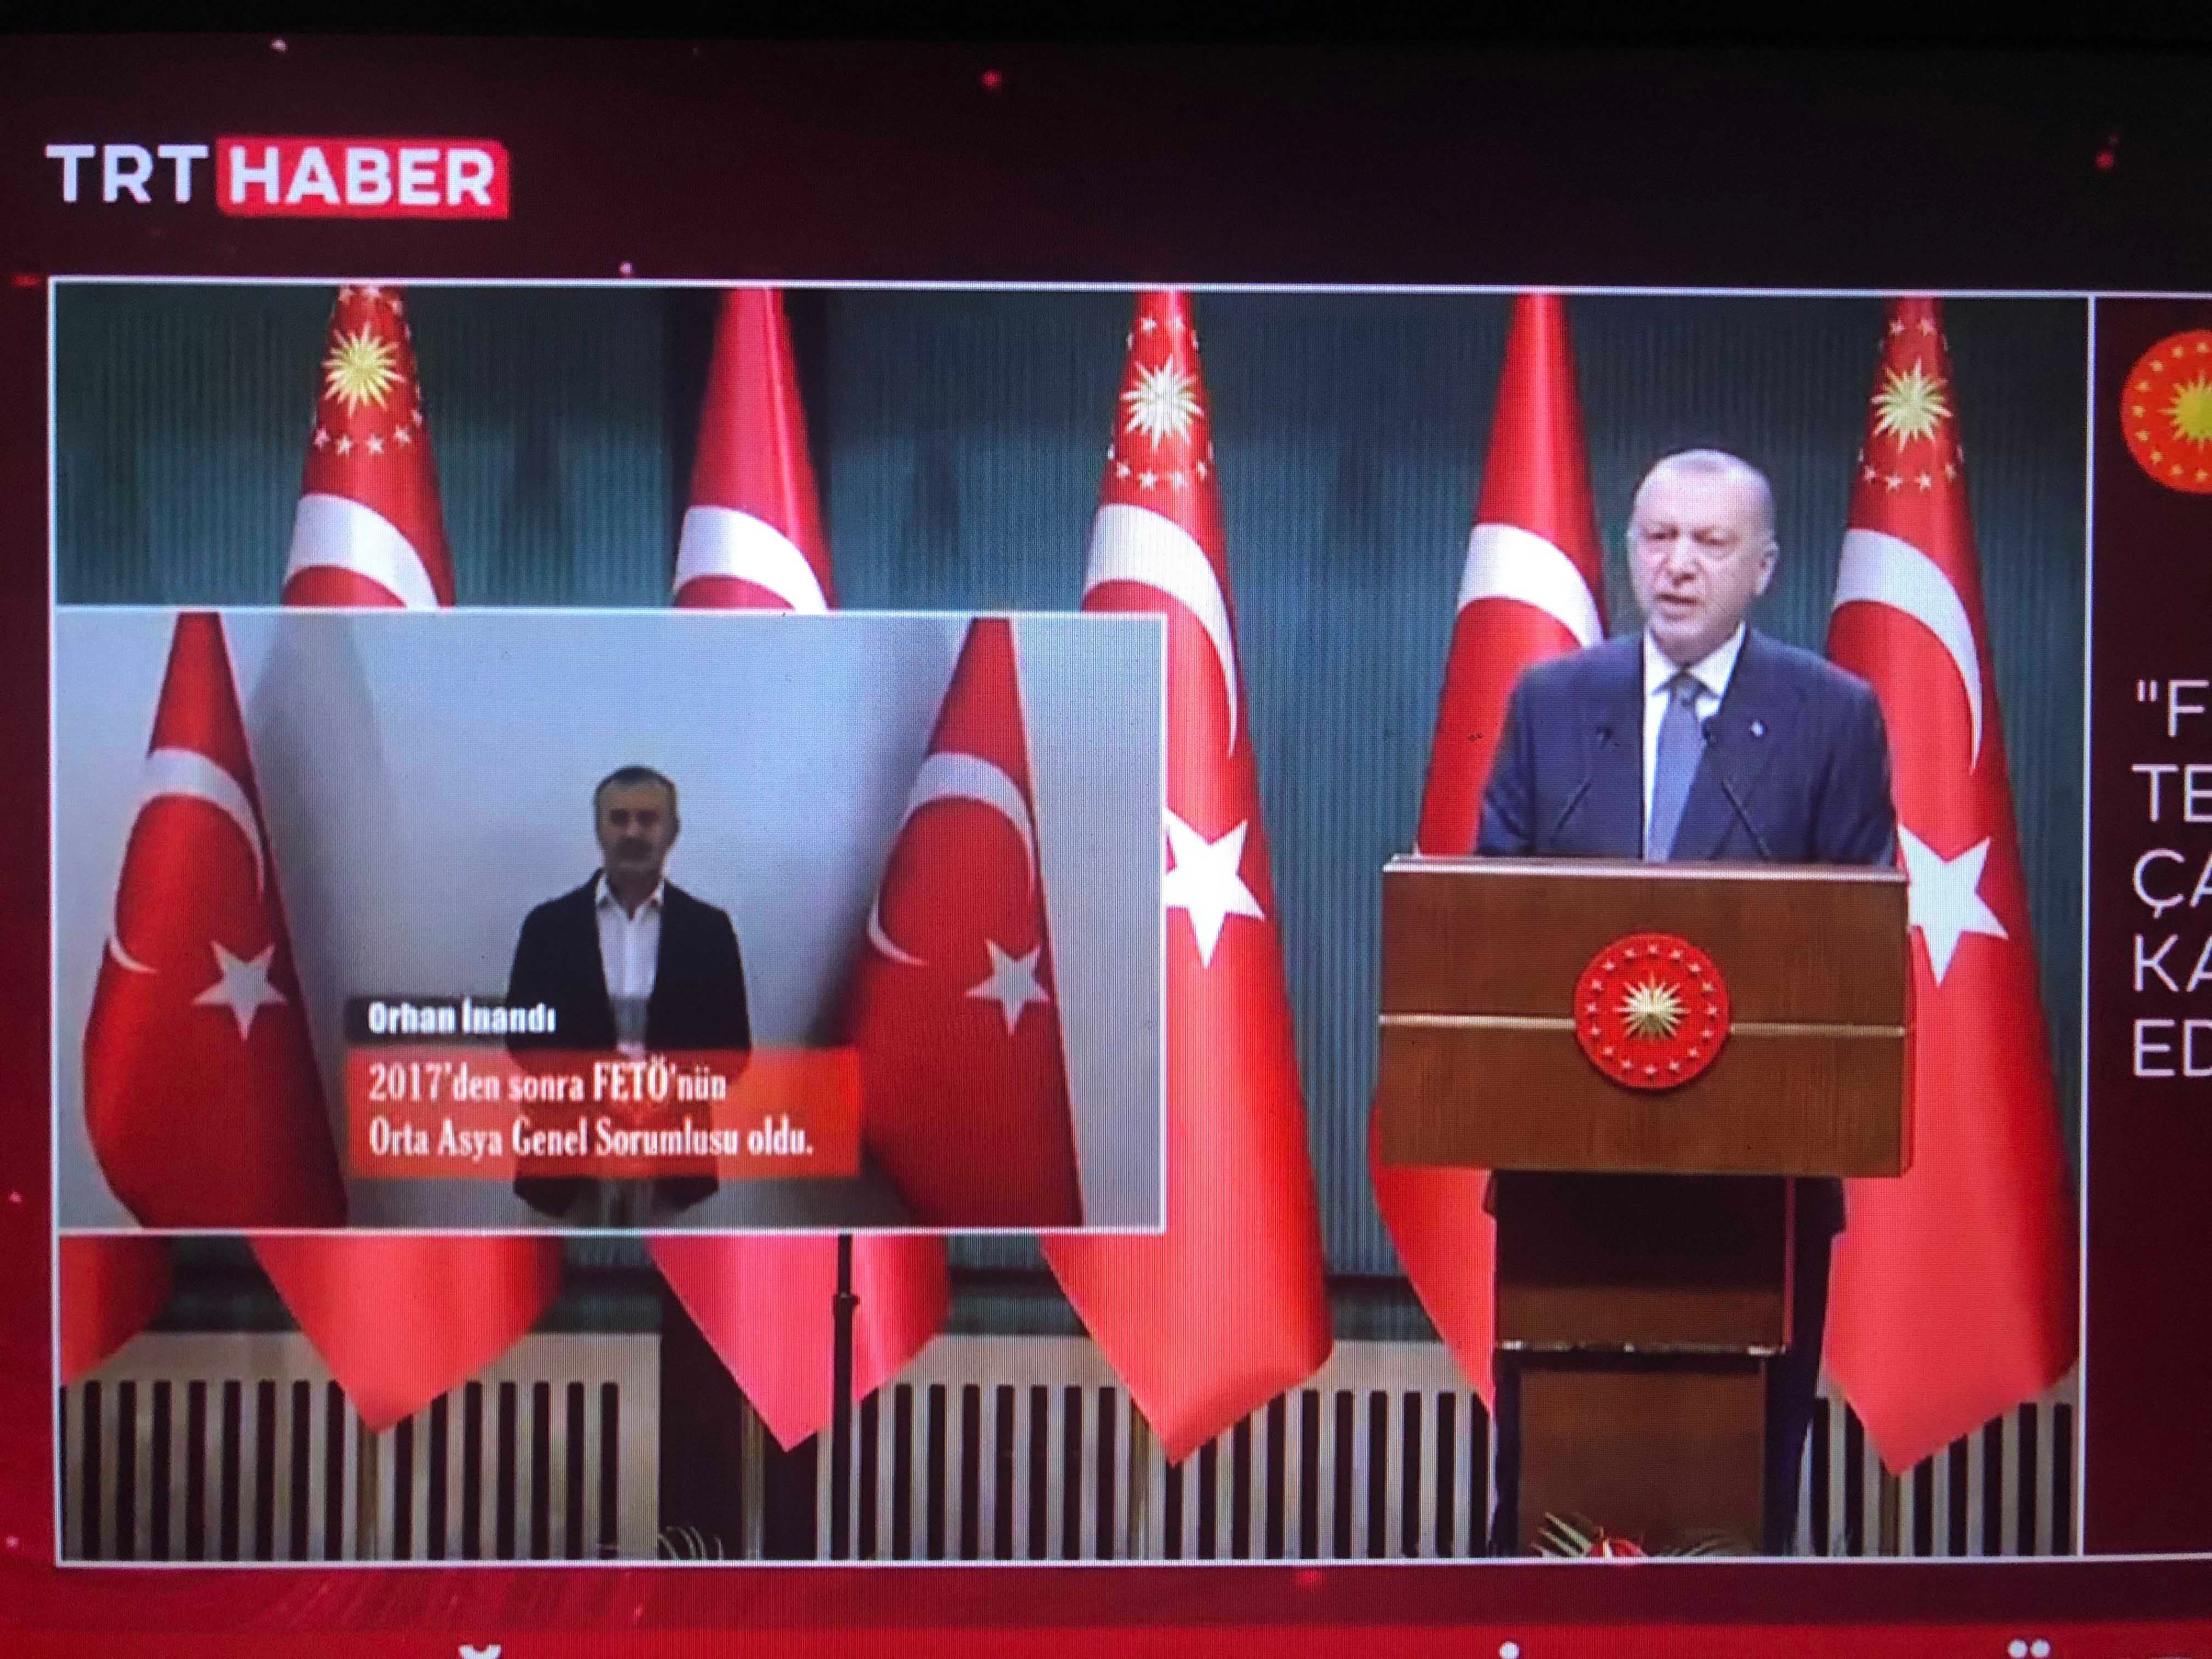 Türkiye Cumhurbaşkanı Recep Tayyip Erdoğan, 5 Temmuz 2021'de TRT TV'de yayınlanan basın toplantısında, istihbarat servisinin Orhan İnandı'yı Kırgızistan'dan Türkiye'ye getirdiğini duyurdu.